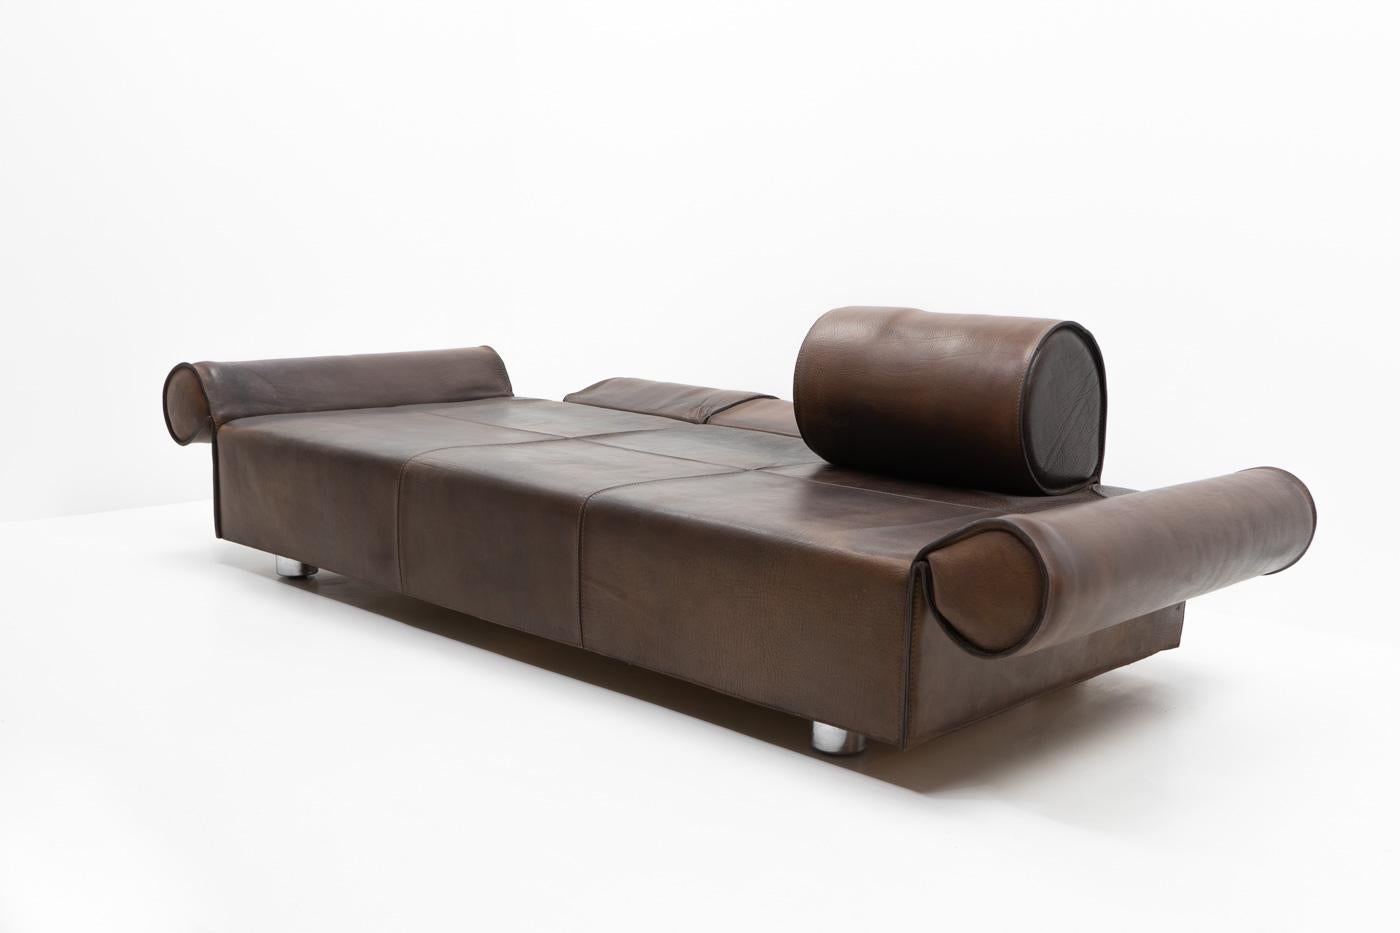 Italian Design Marzio Cecchi Three-seater Sofa in Brown Buffalo Leather, 1970s For Sale 1